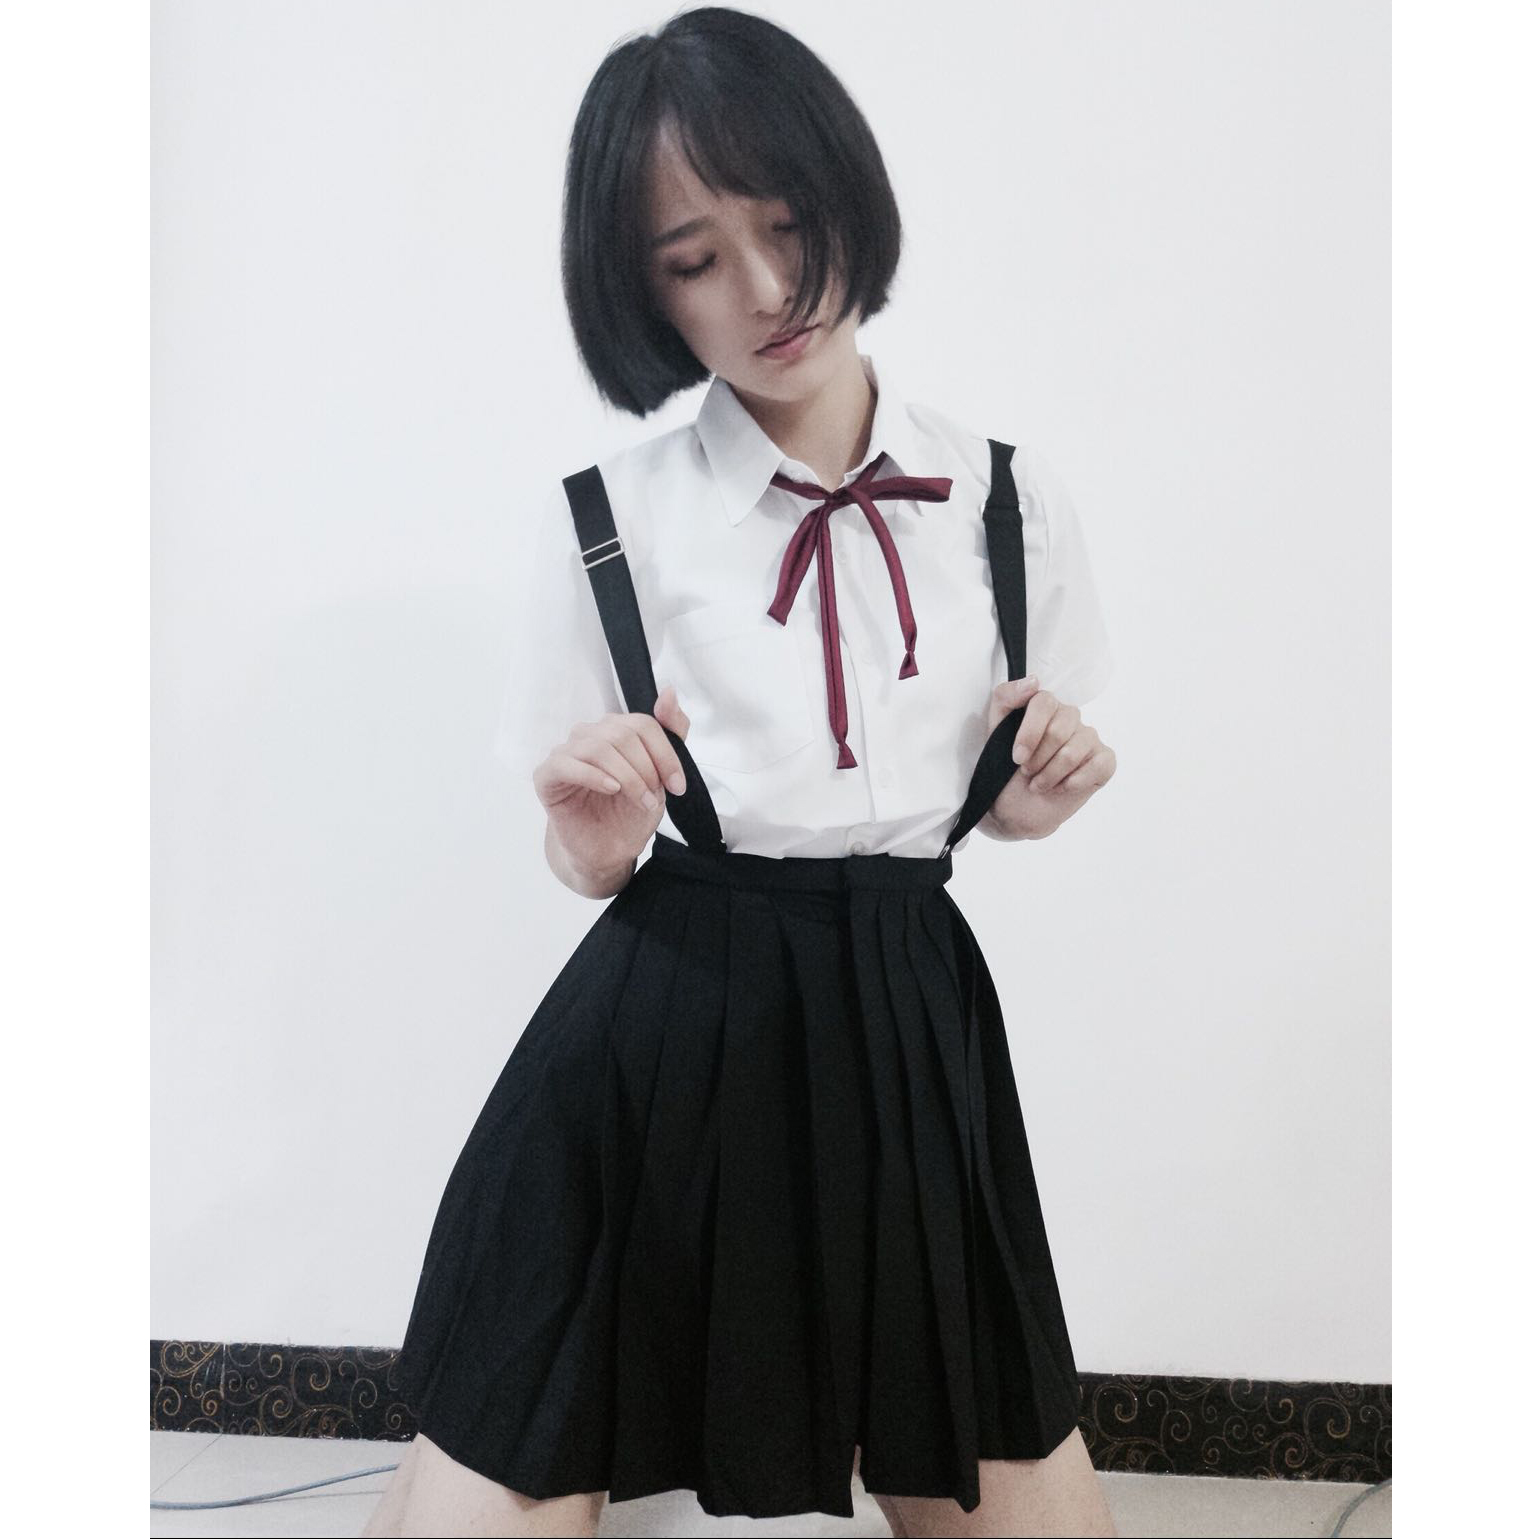 【桃桃初露】DoKira原创设计桃子茶饮感 原创JK格裙 现货